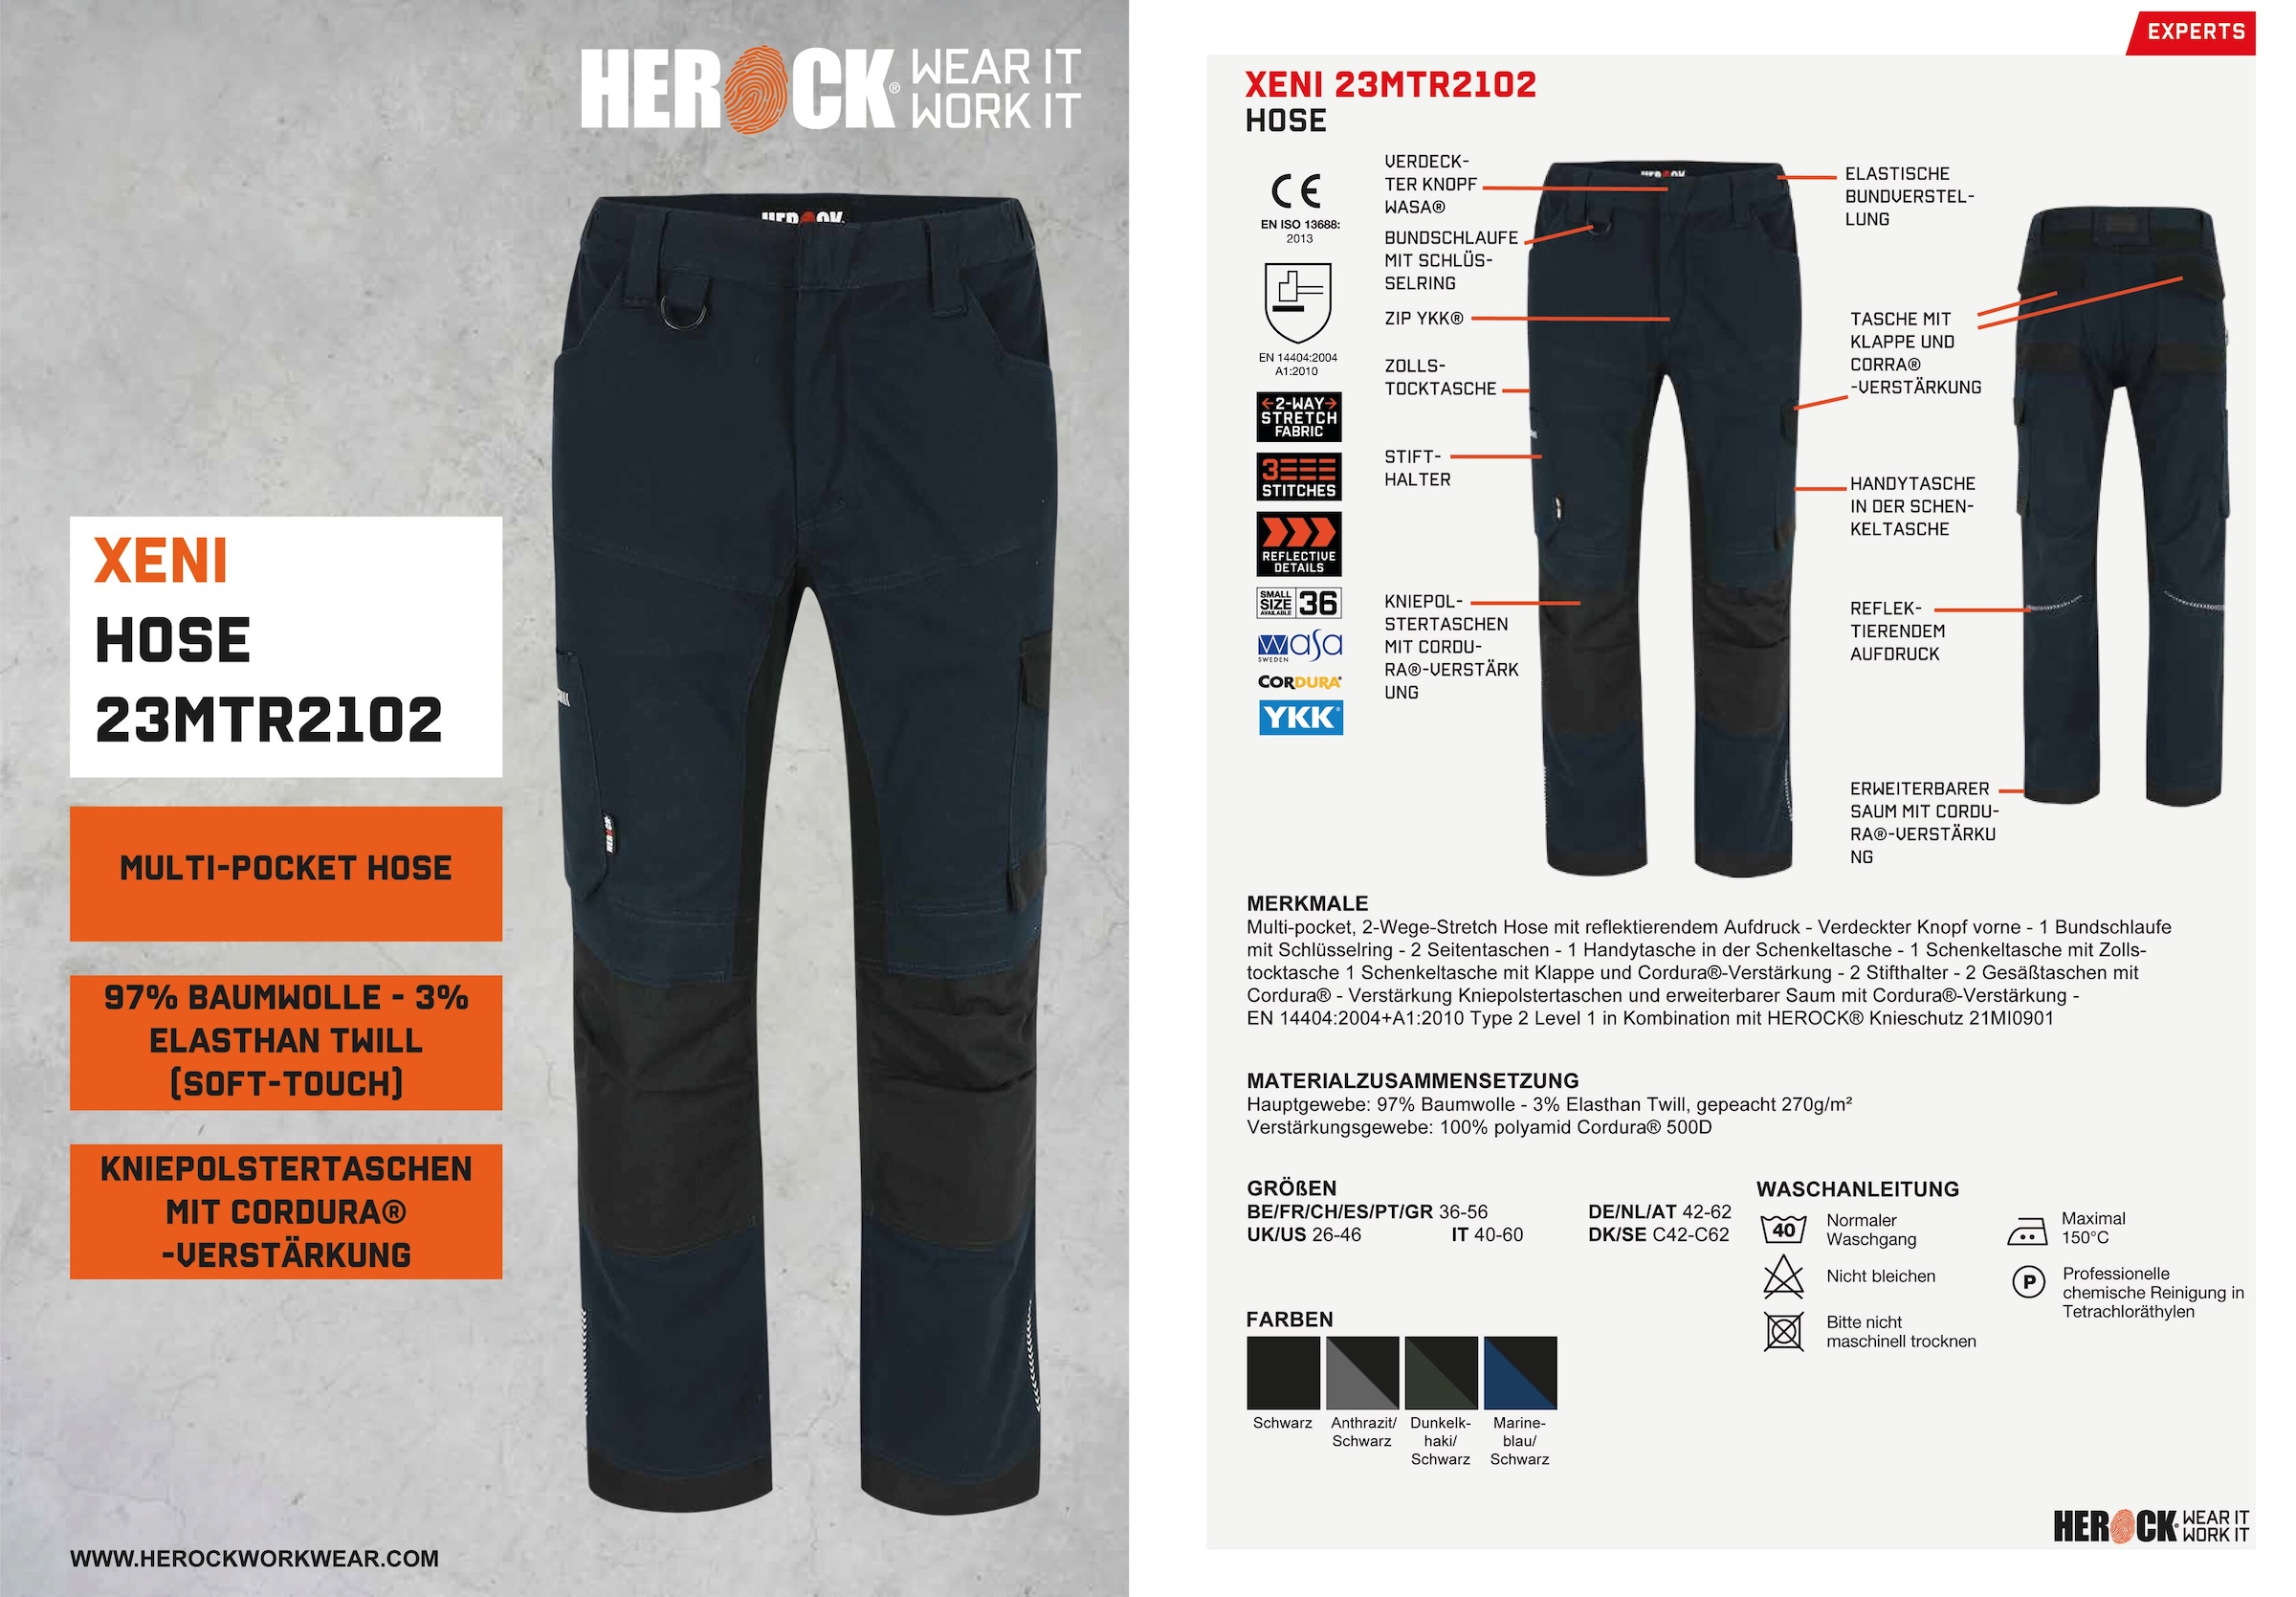 Herock Arbeitshose »XENI«, Multi-pocket, Stretch, wasserabweisend, Baumwolle,  weich und bequem online kaufen